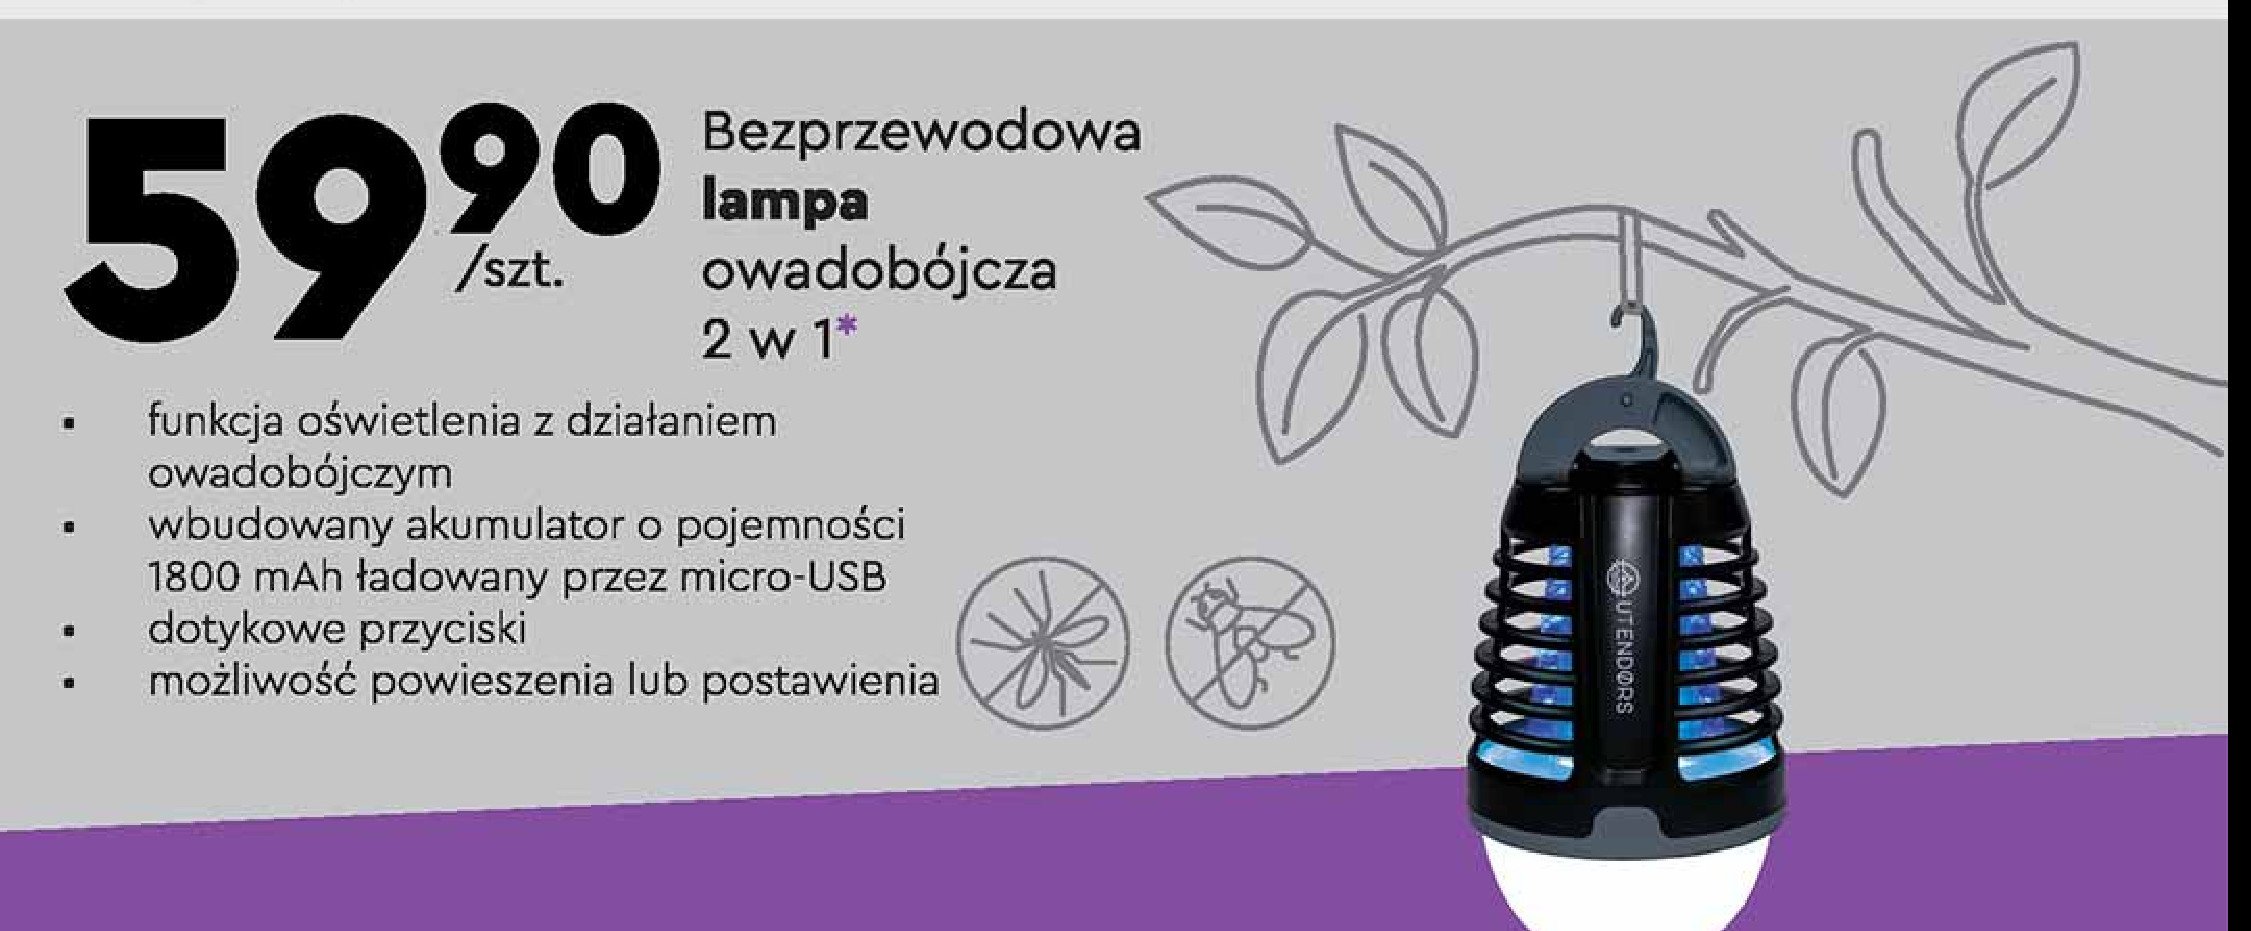 Lampa owadobójcza 2w1 Utendors promocja